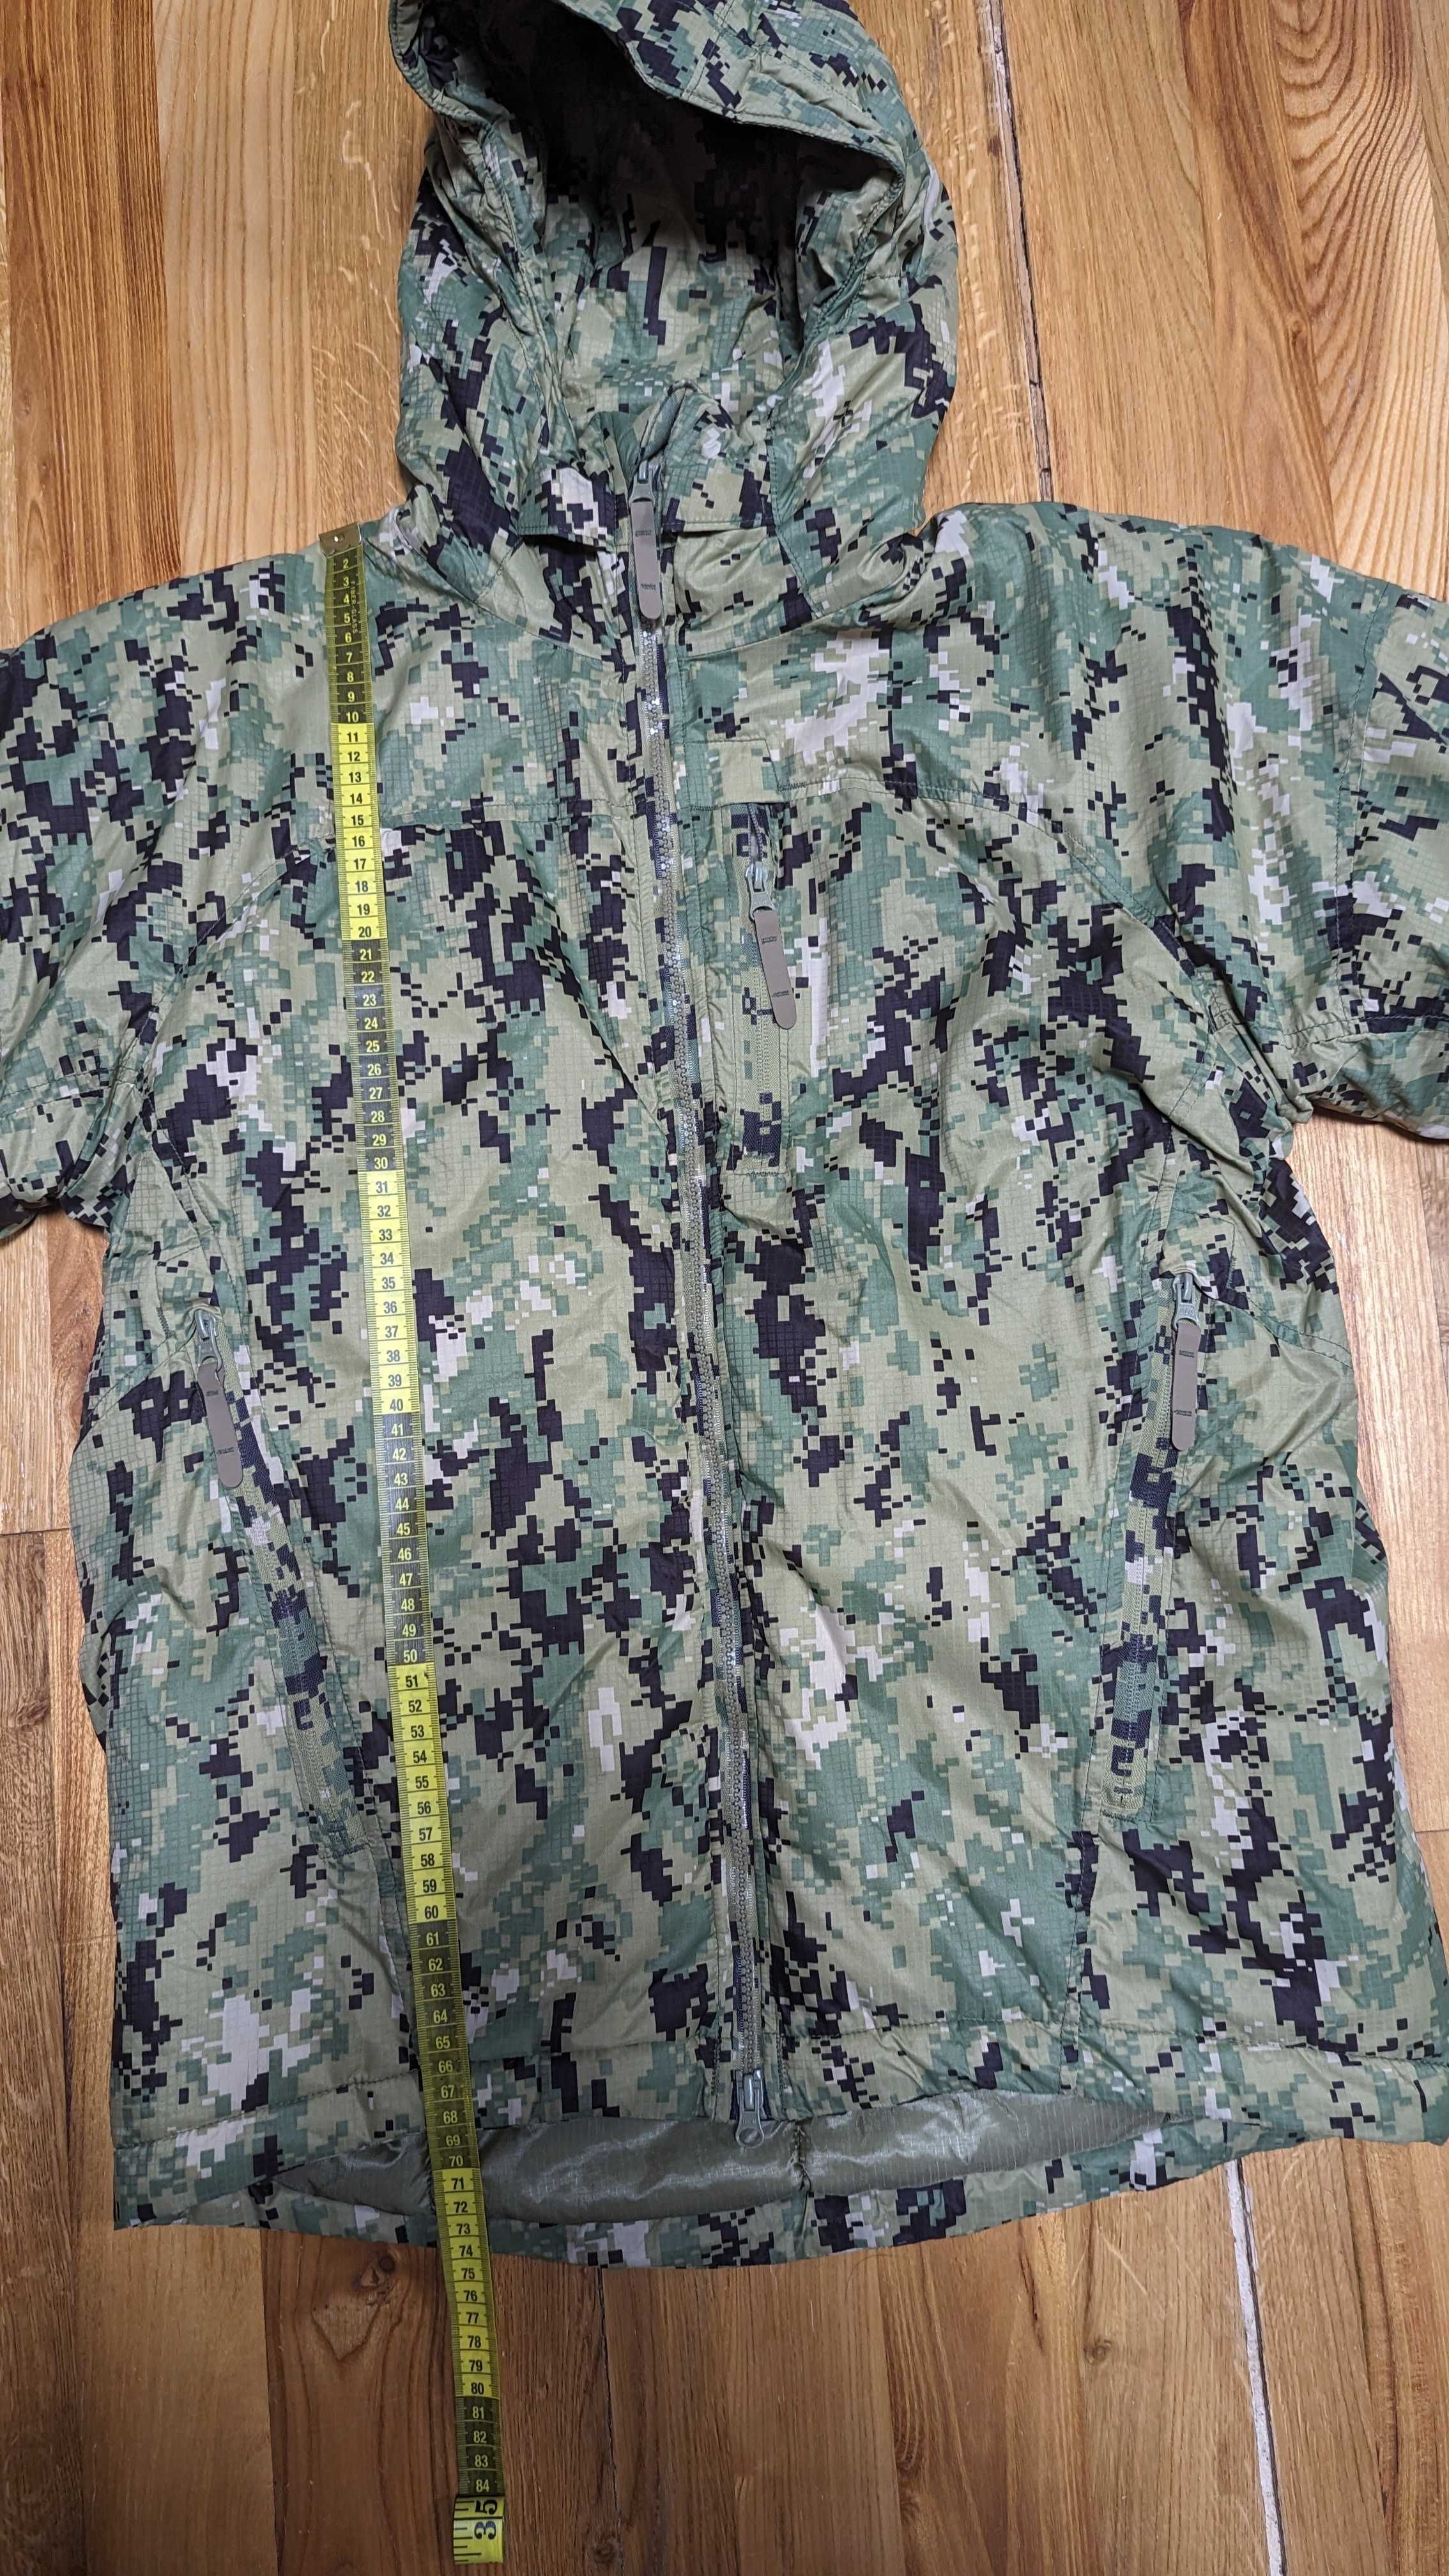 Куртка ECWCS Level 7 от Massif. Расцветка AOR2. Размер S/R (или 48/4)